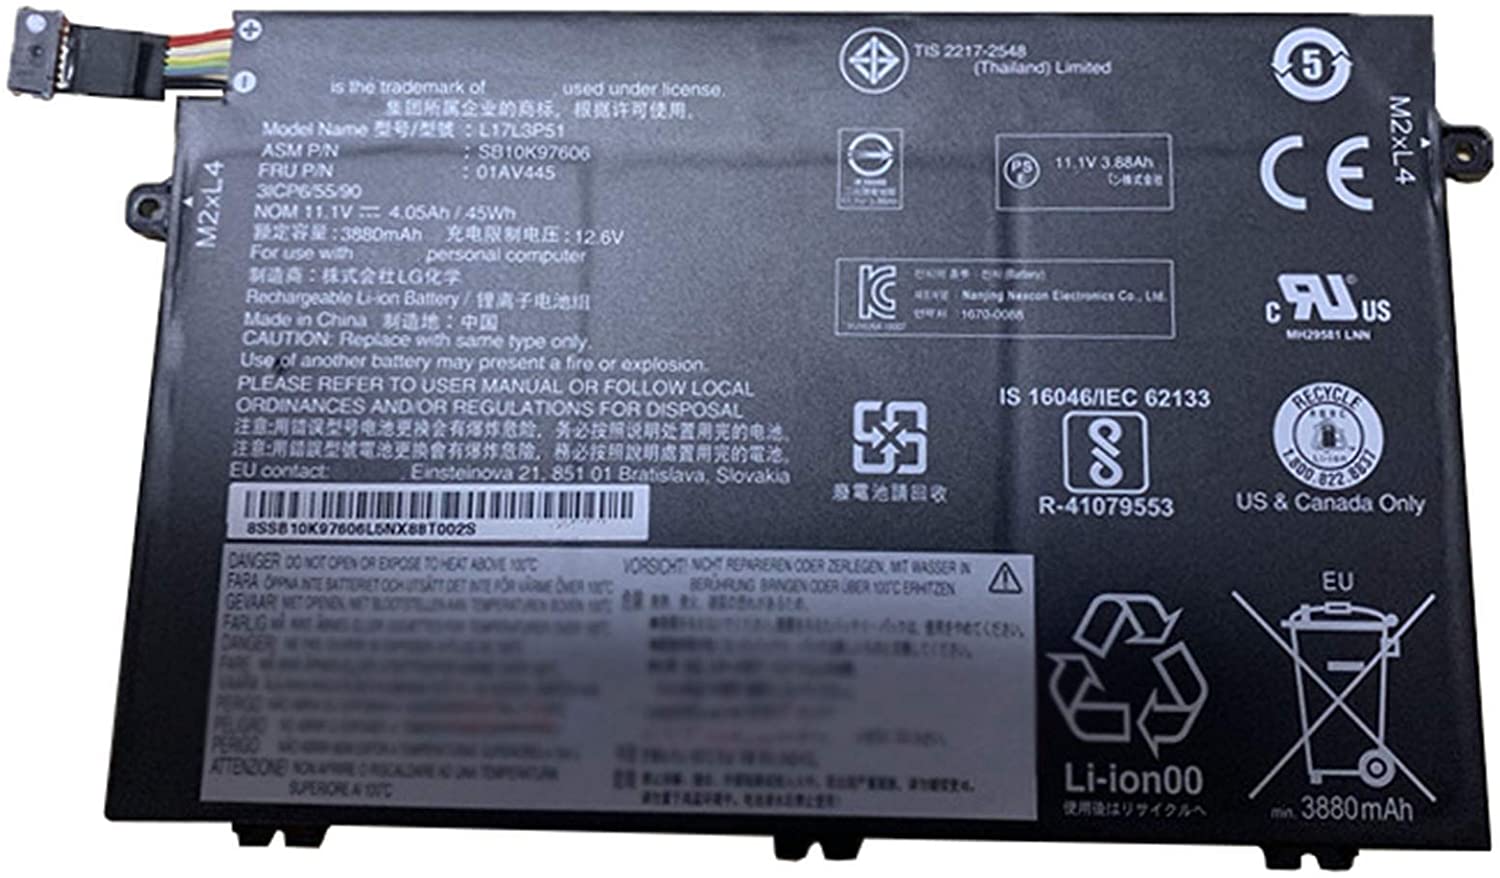 Splendid Branded Laptop Battery for LENOVO L17L3P51 High Quality Battery